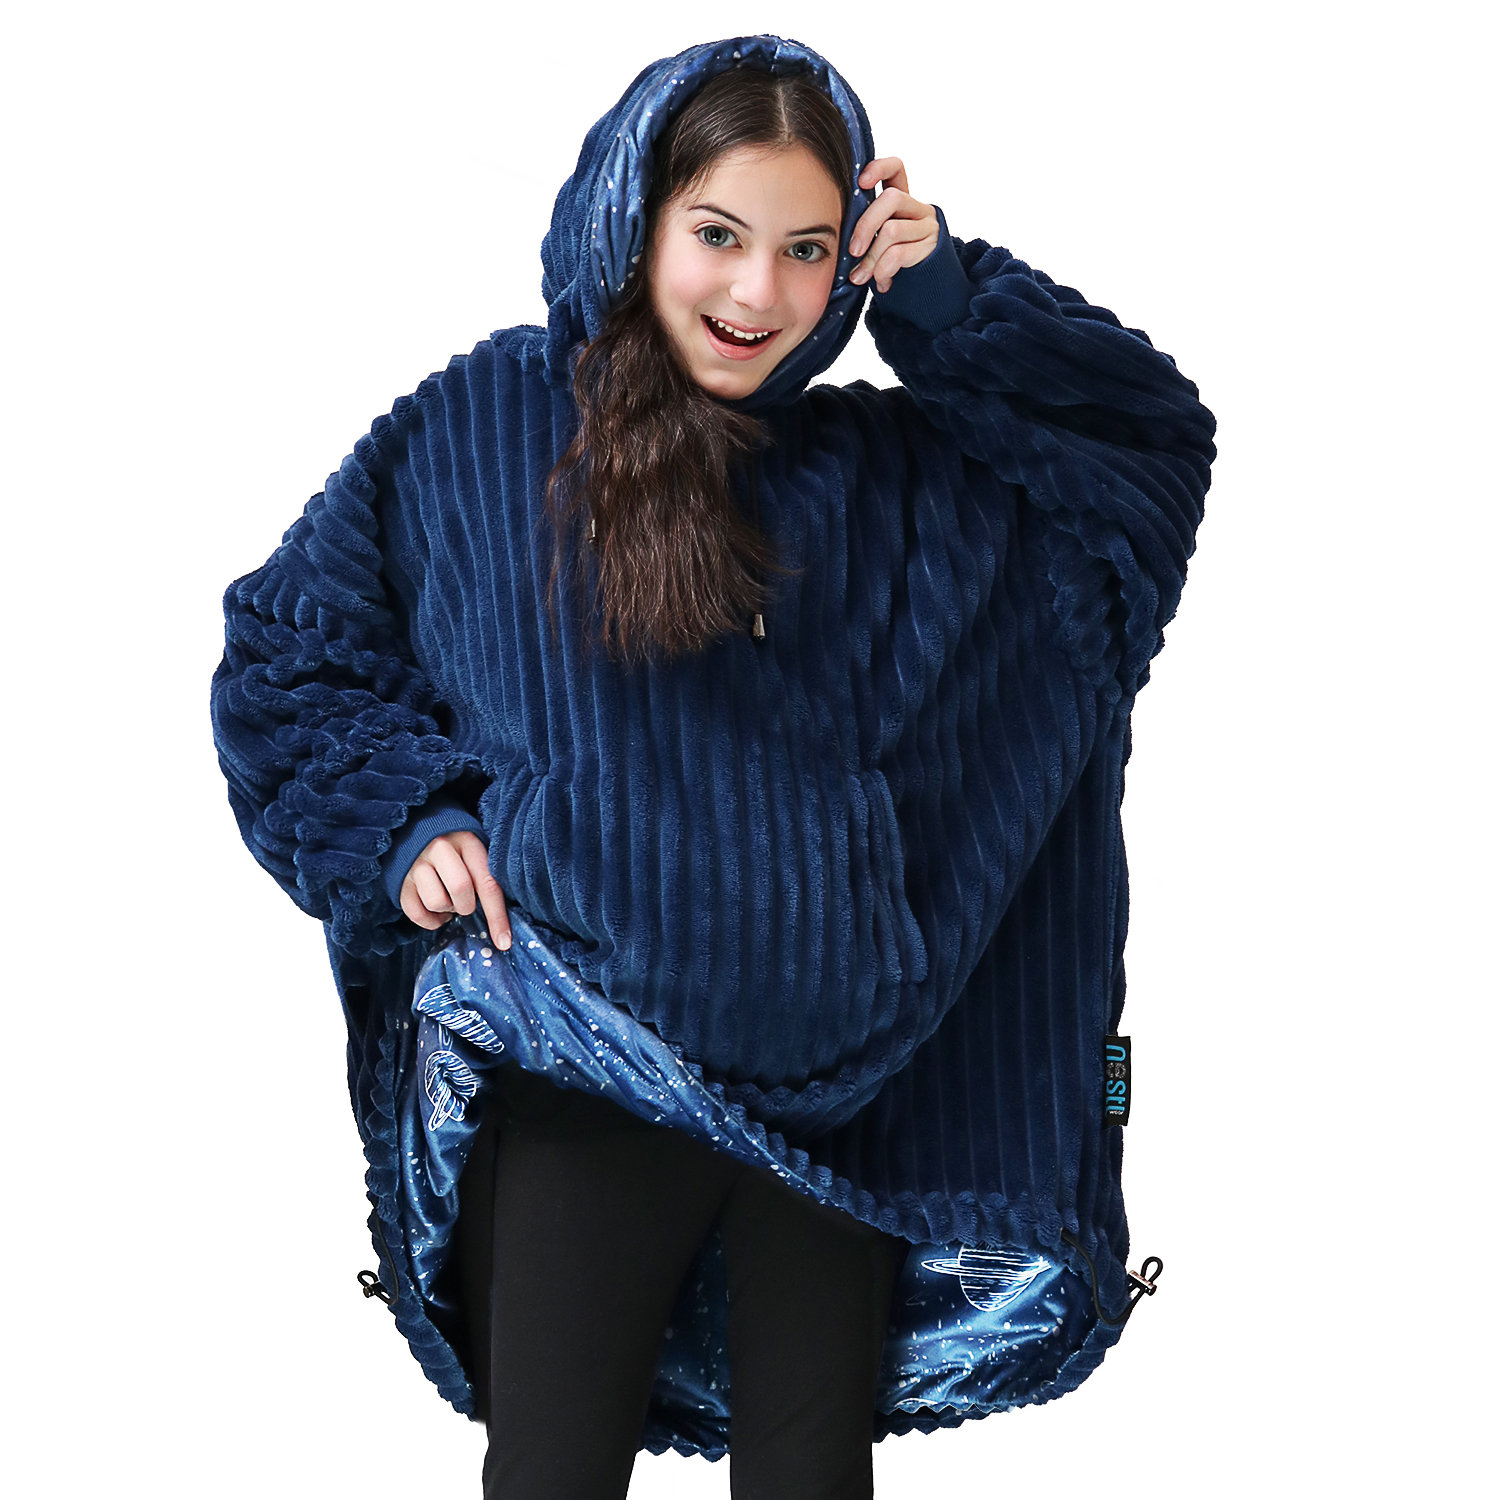 ONY Pale Blue Fleece Oversized Unisex Blanket Hoodie